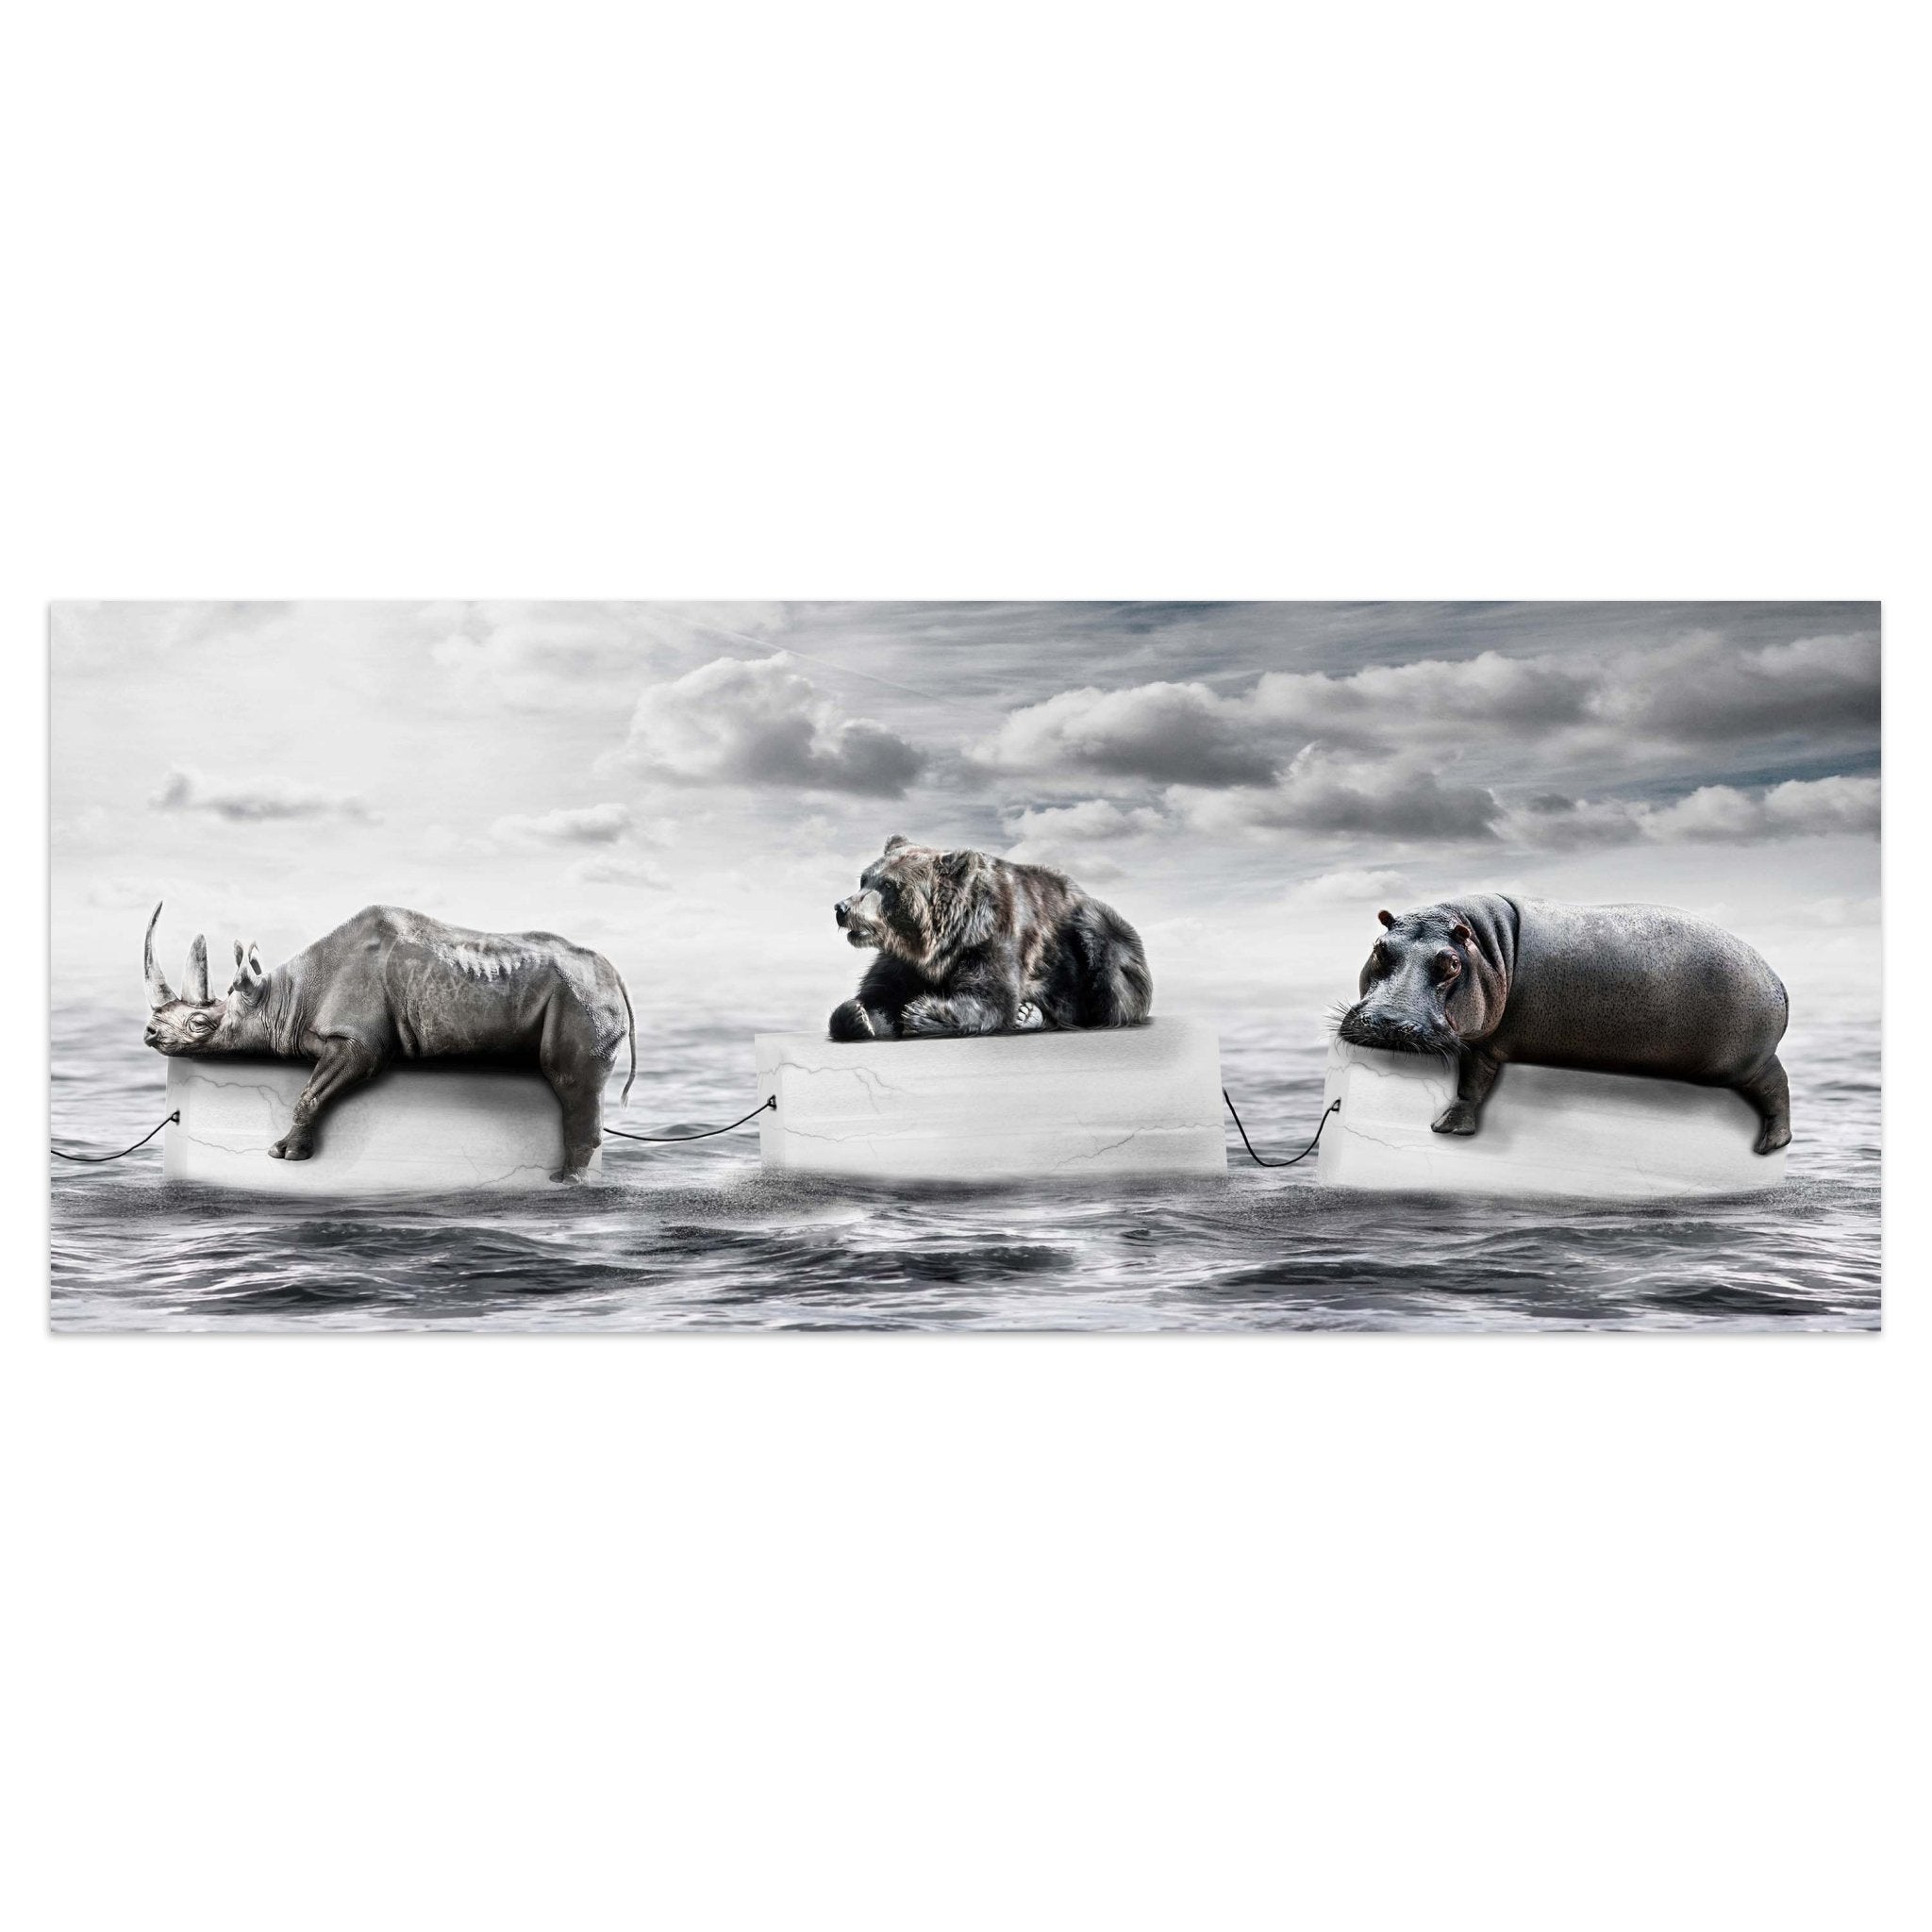 Leinwandbild Bär & Nilpferd auf Eis, Meer, Klima M1097 kaufen - Bild 1